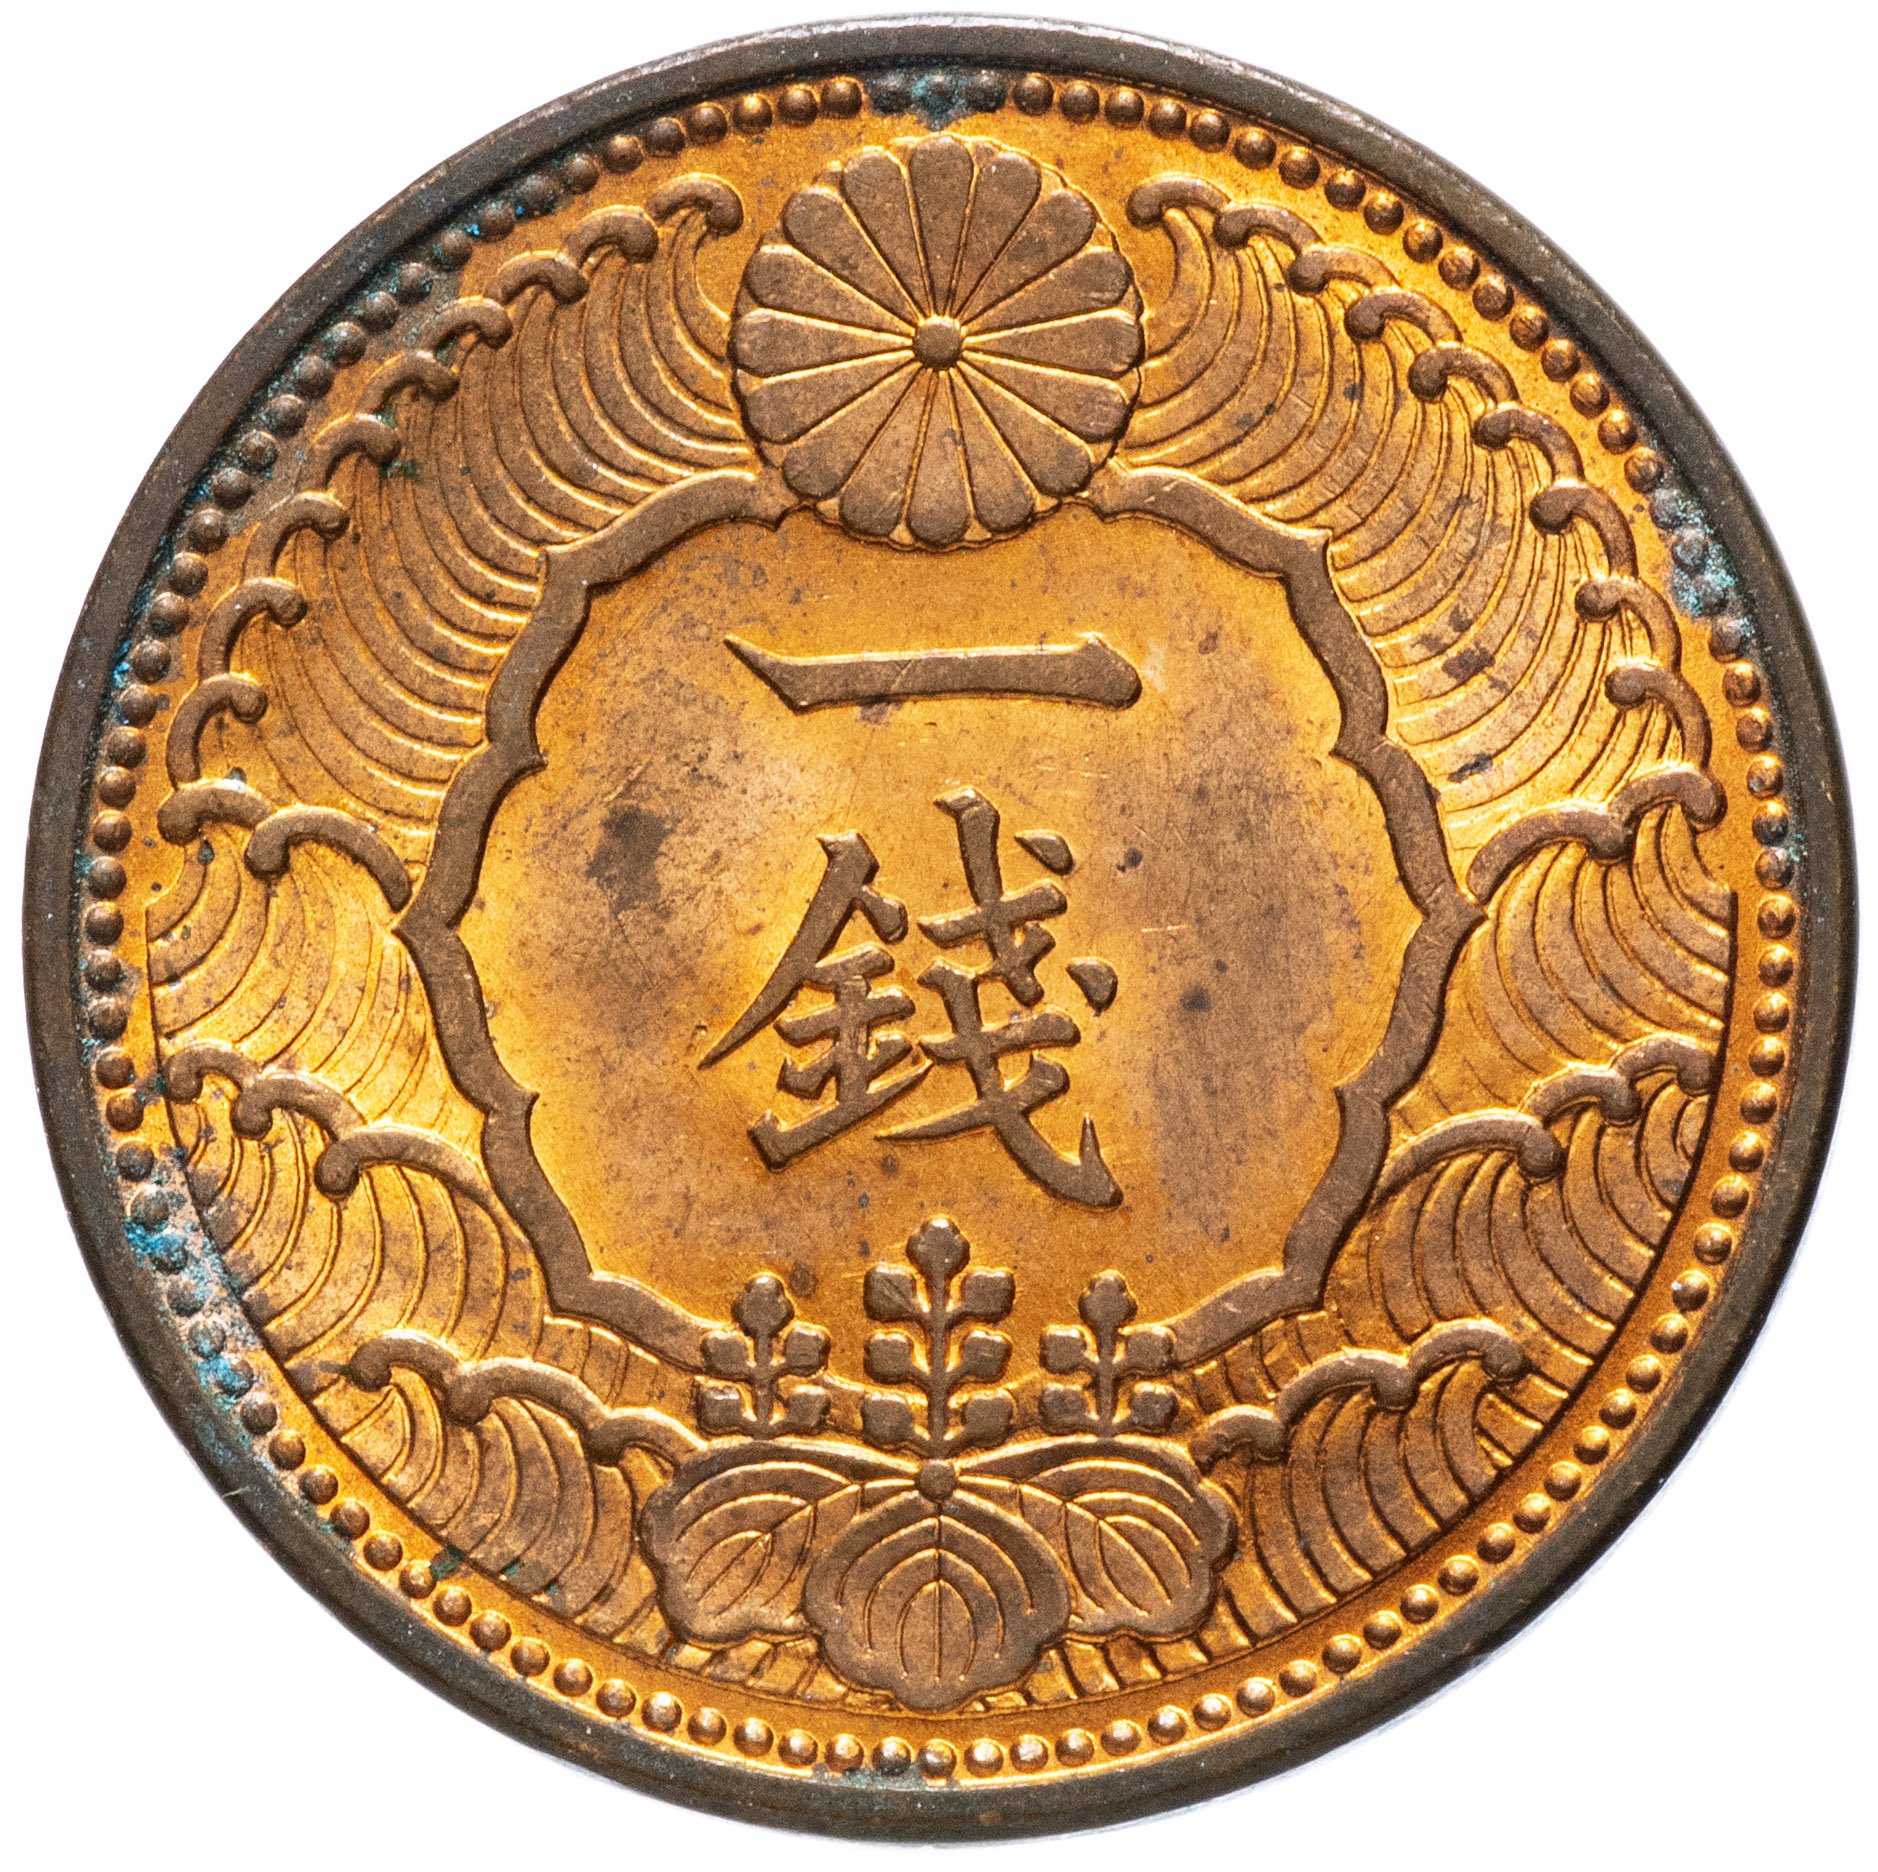 King японская монета